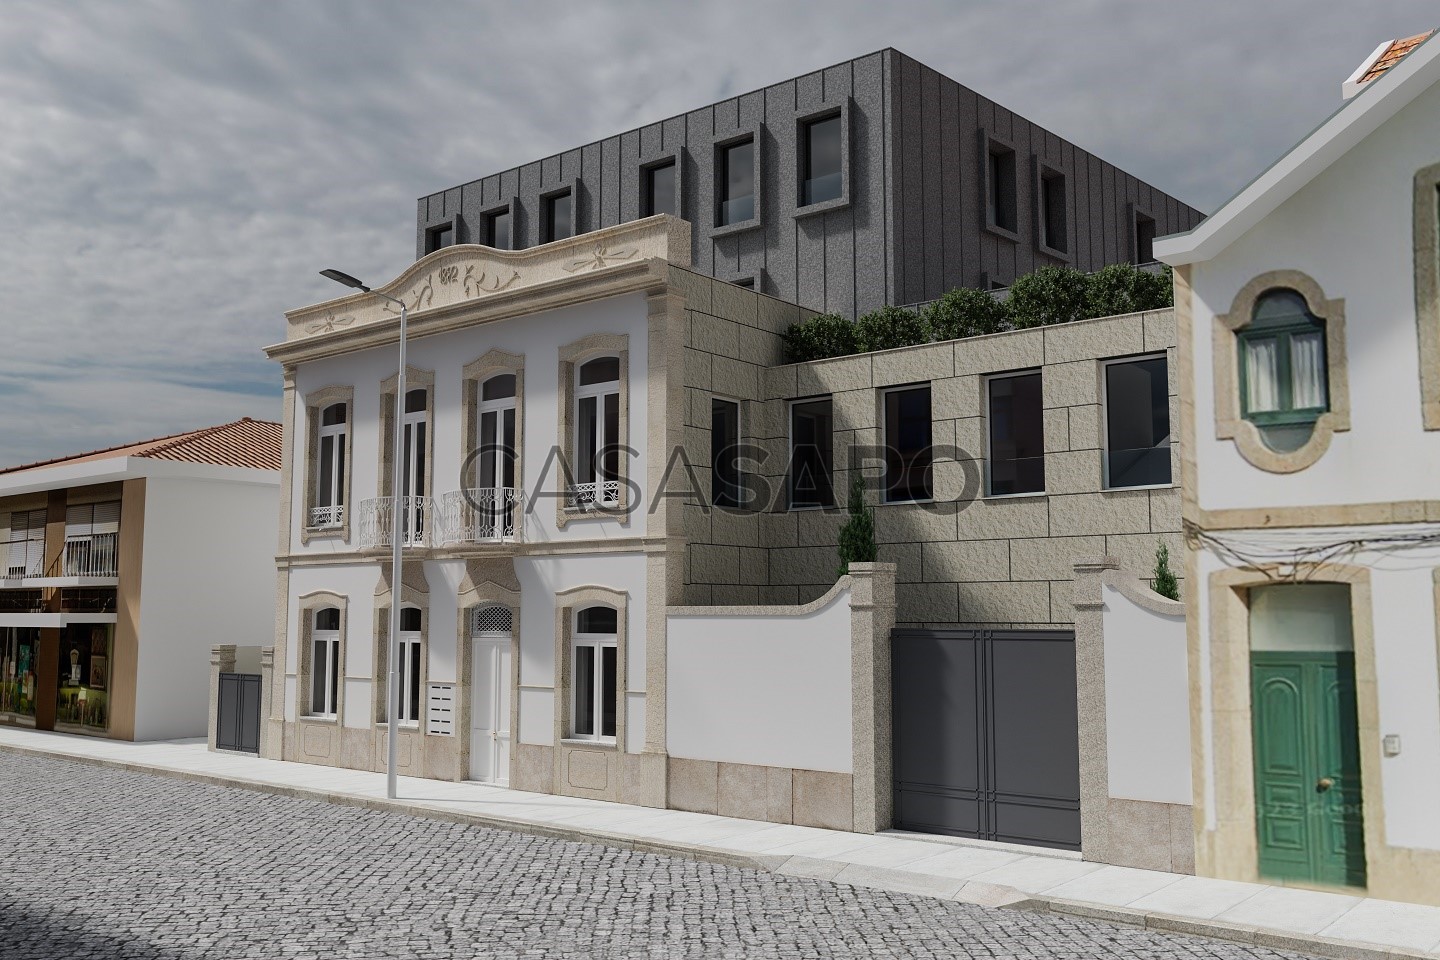 Apartamento T4 para comprar em Vila do Conde